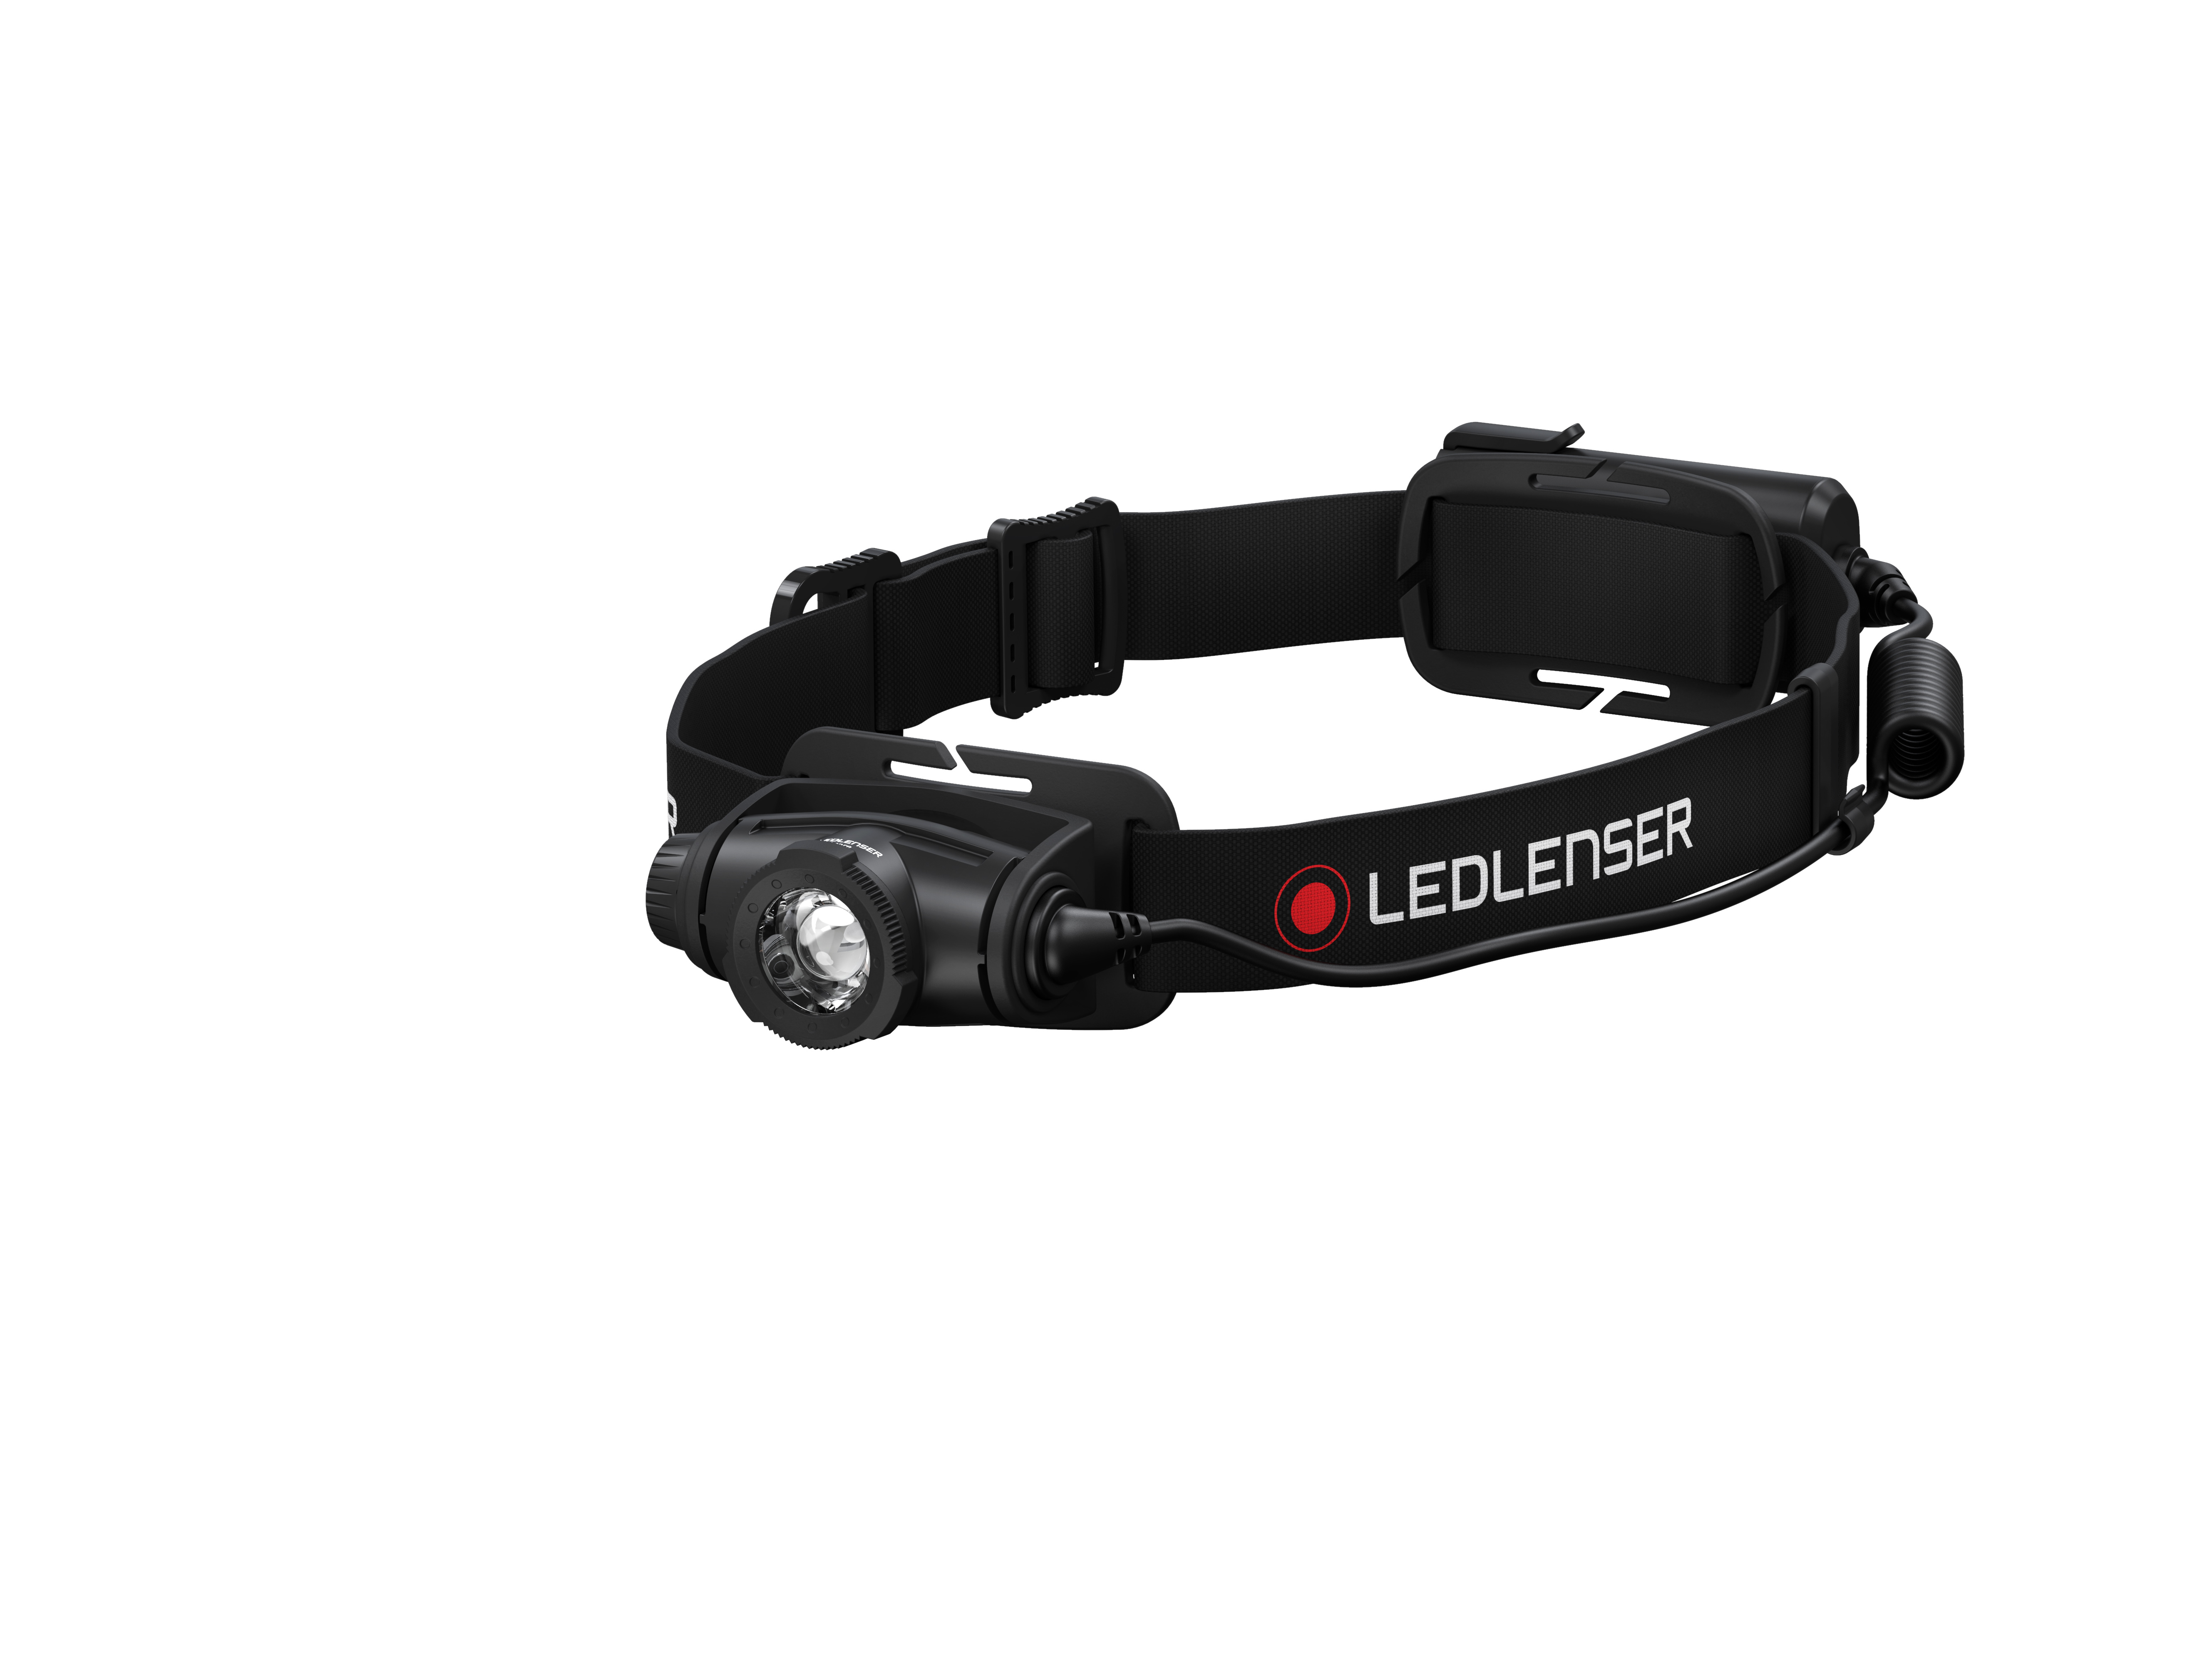 LED Lenser H5 Core - Stirnband-Taschenlampe - Schwarz - IPX7 - LED - 350 lm - 160 m